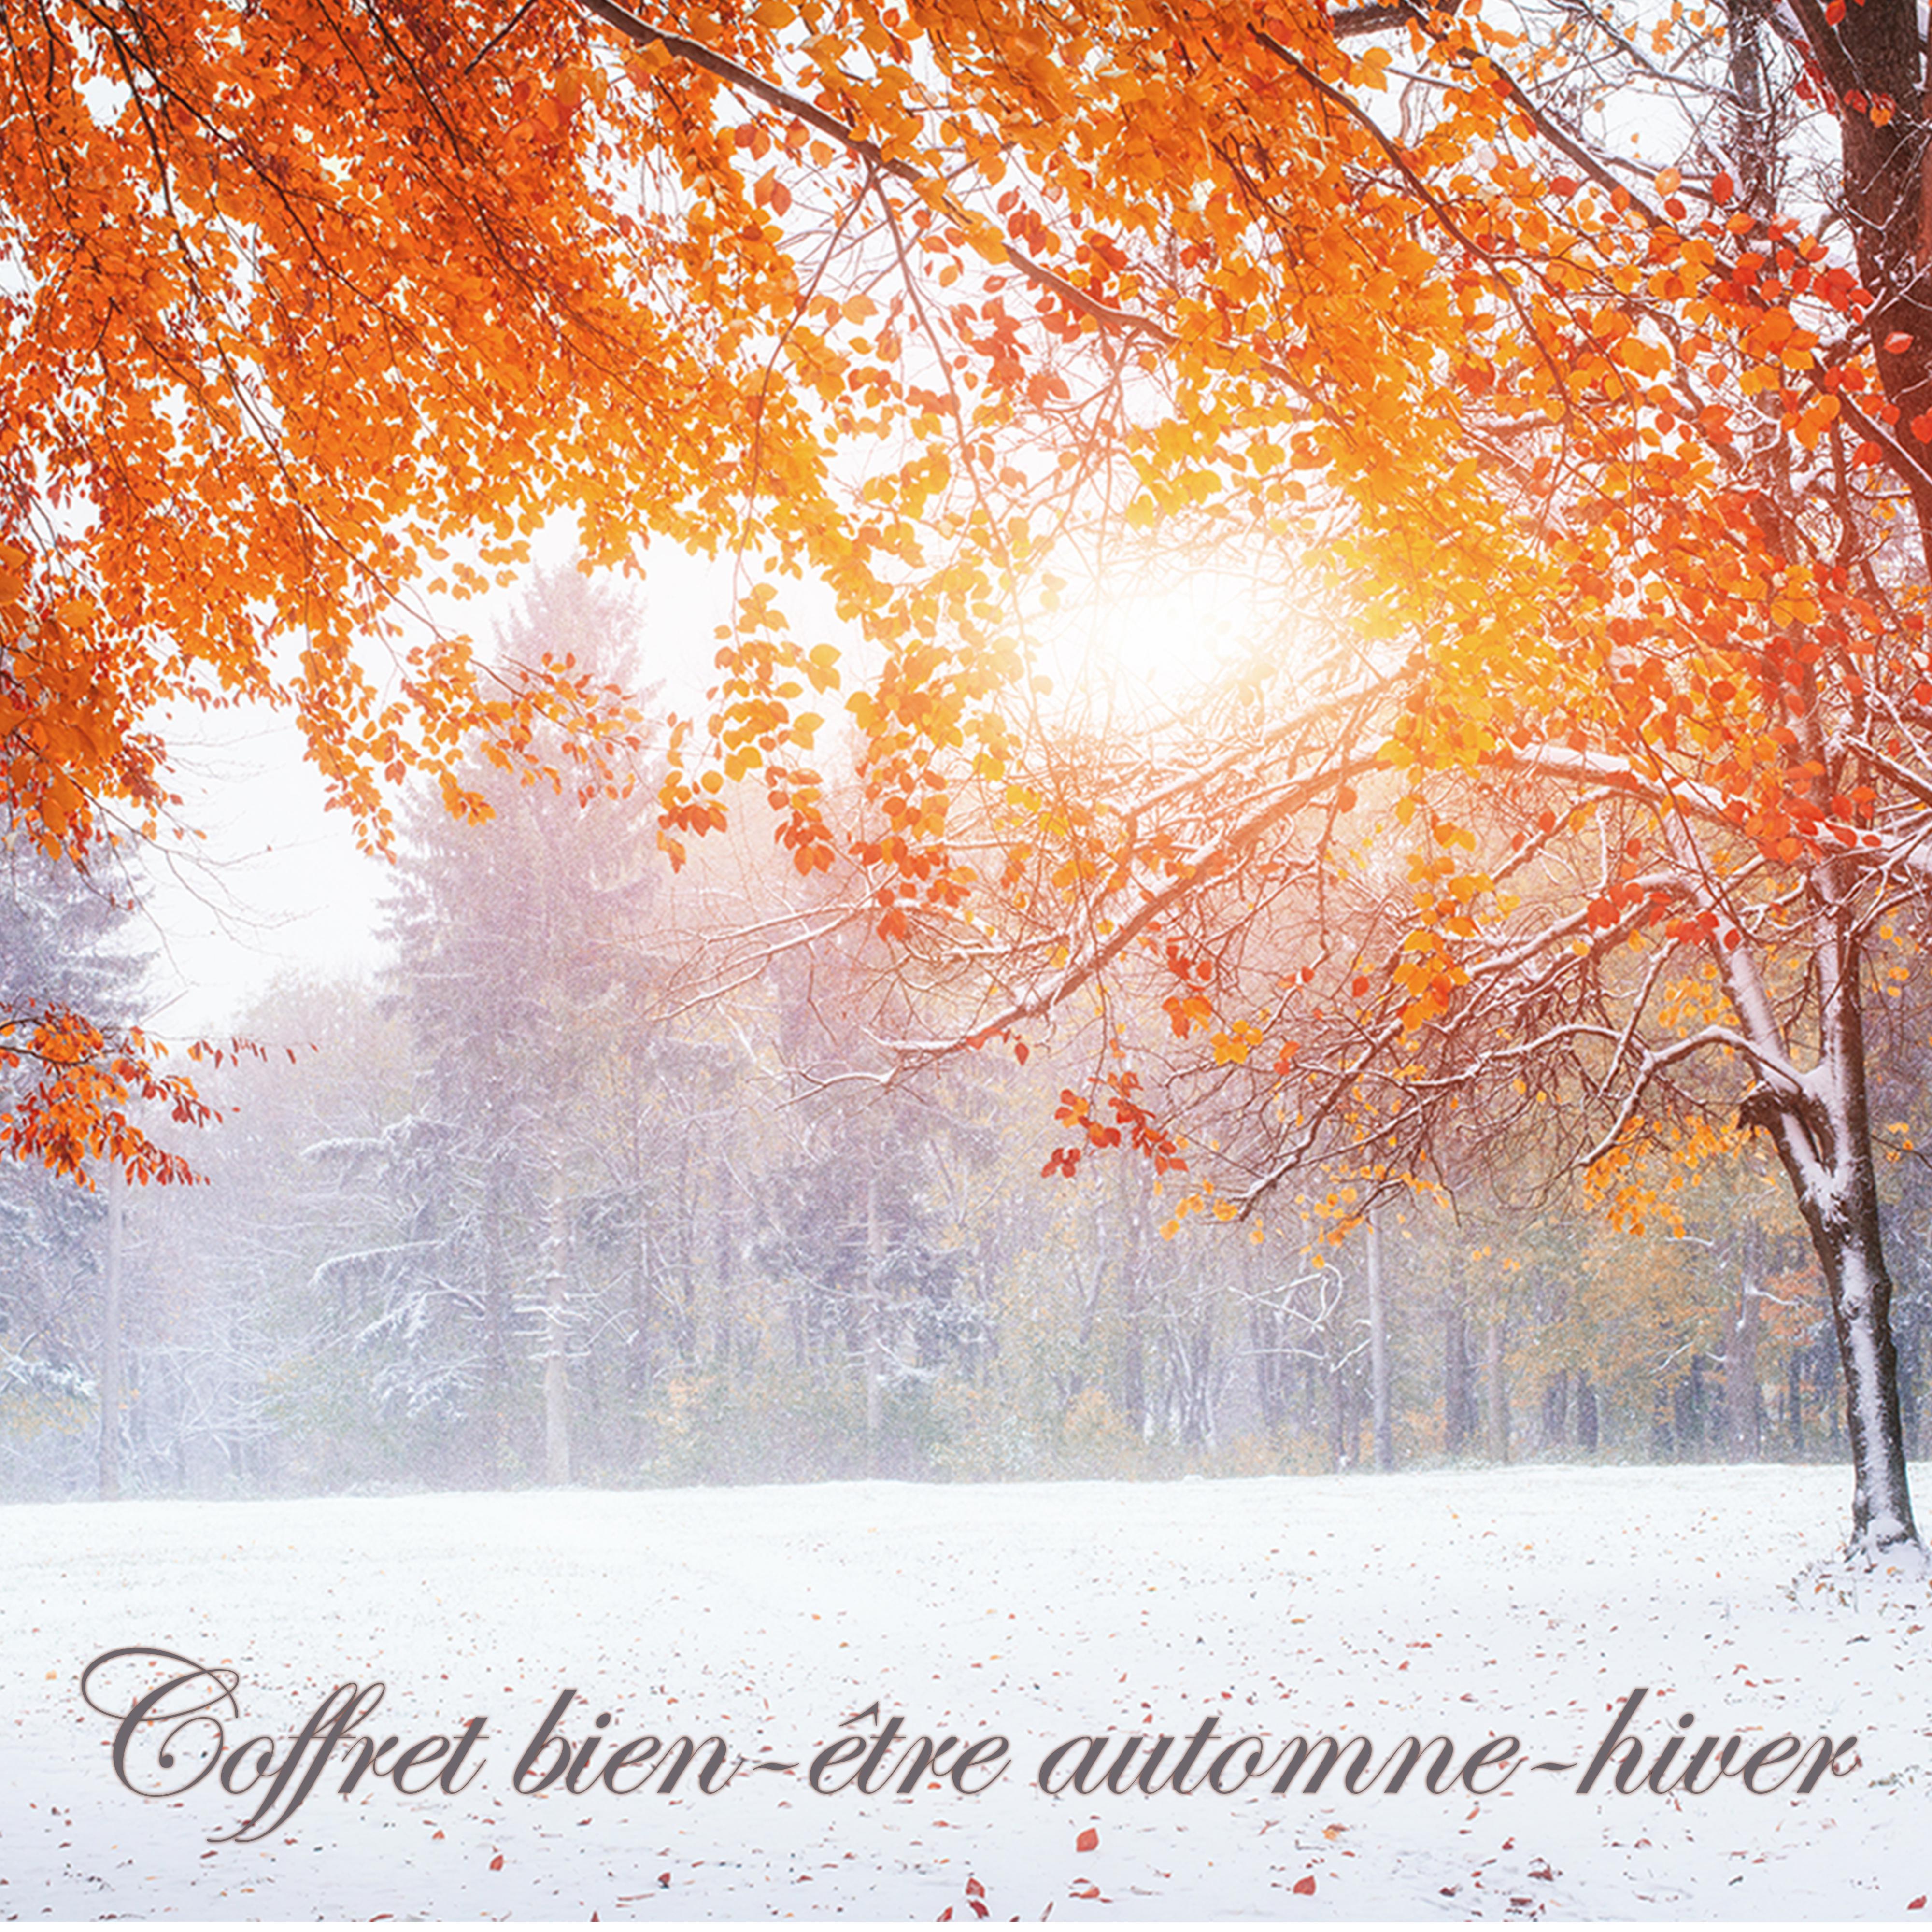 Coffret bien-être automne-hiver – Musique relaxante de détente, méditation, hamman, shiatsu, réflexologie plantaire et massage